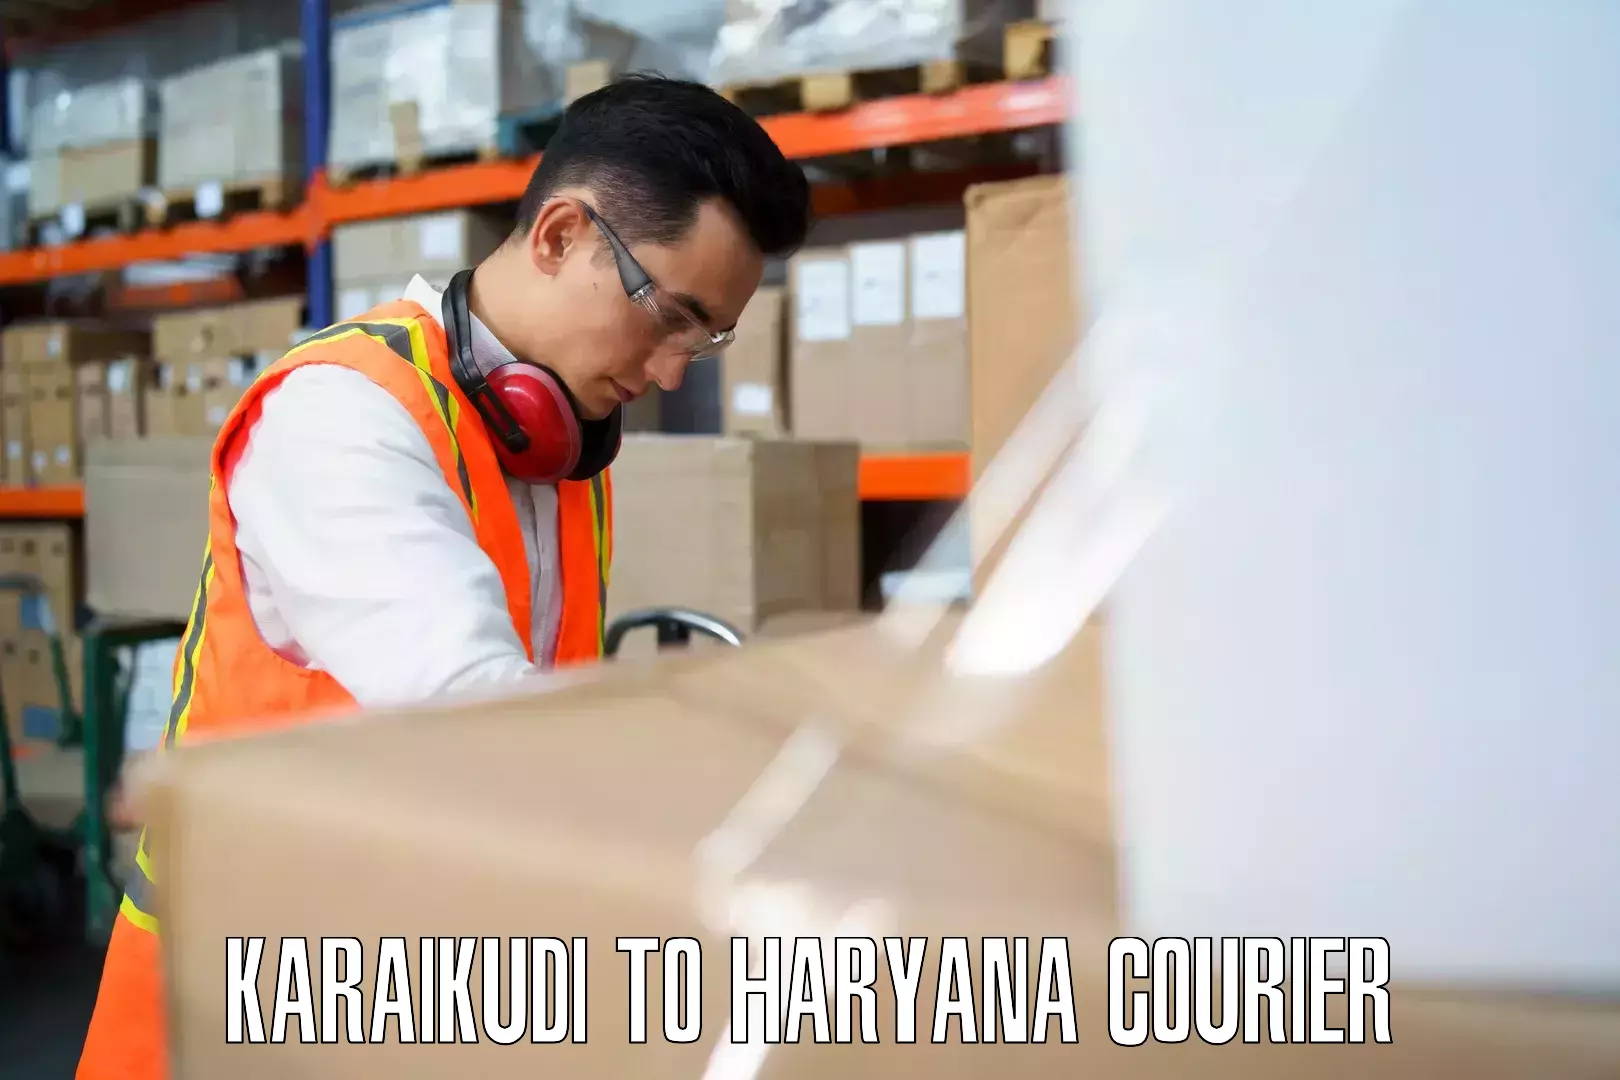 Luggage delivery estimate Karaikudi to Karnal